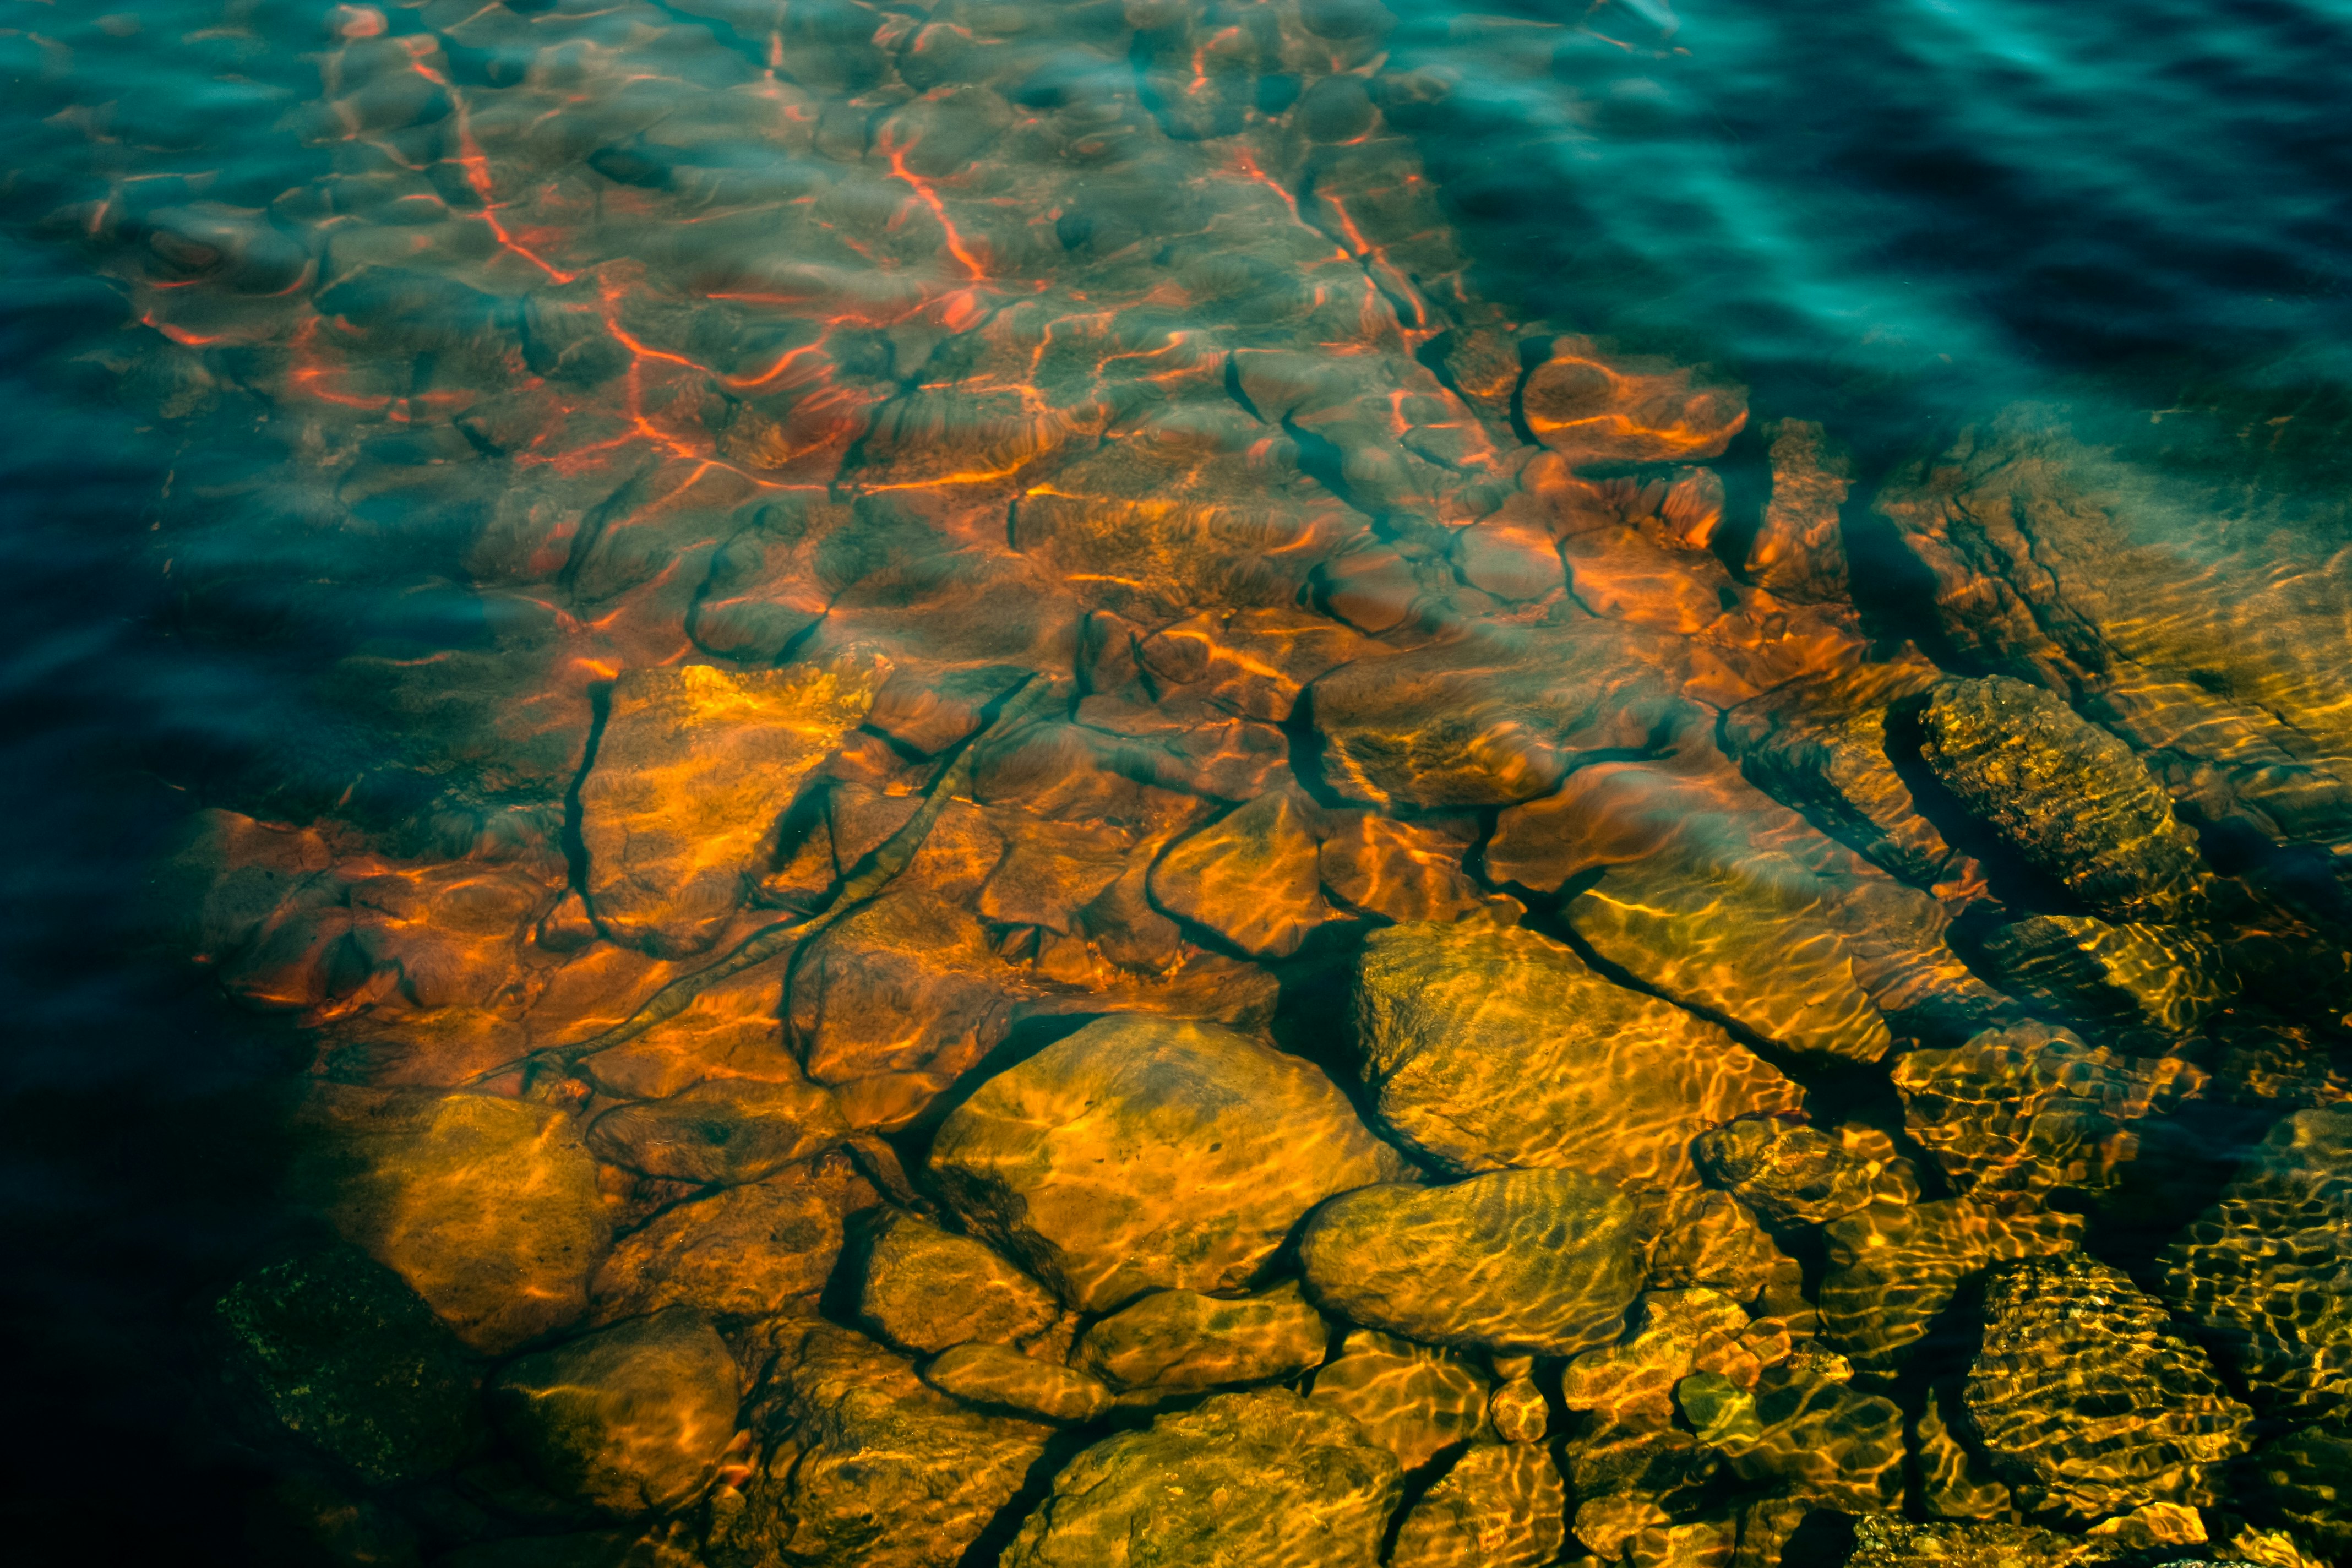 brown rocks underwater during daytime